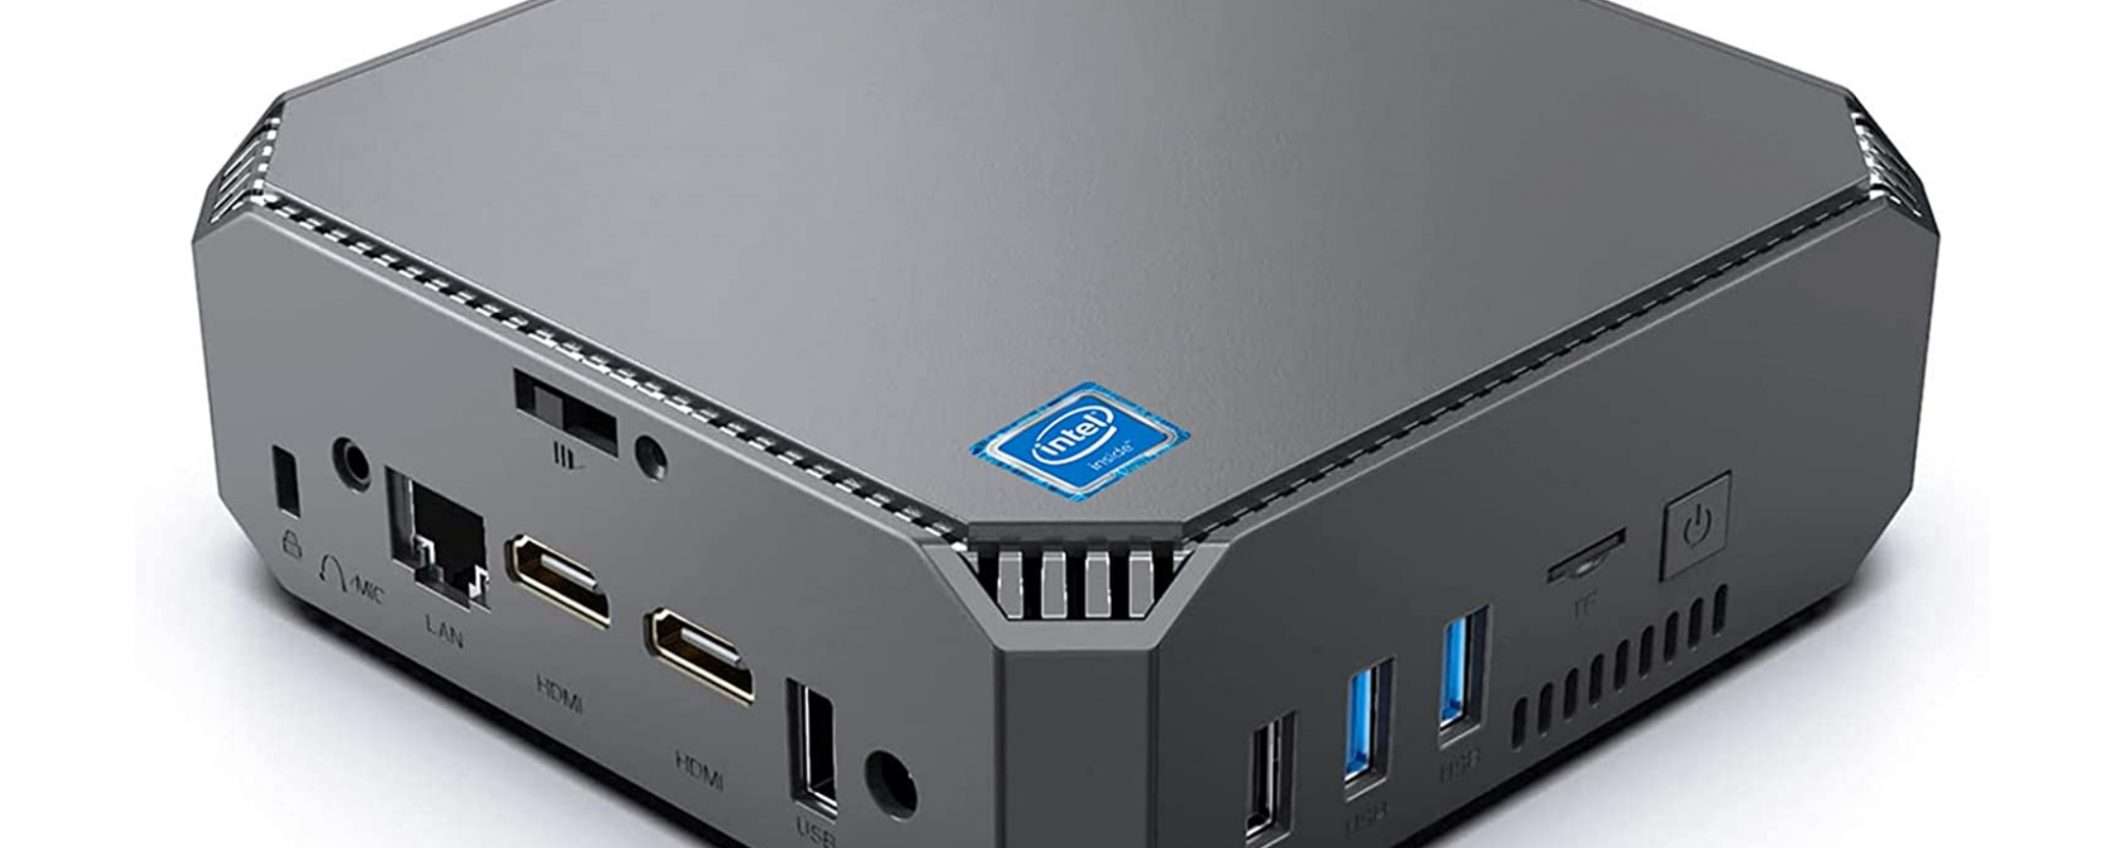 Suncall J3455: il Mini PC Intel quad-core a poco più di 100 euro